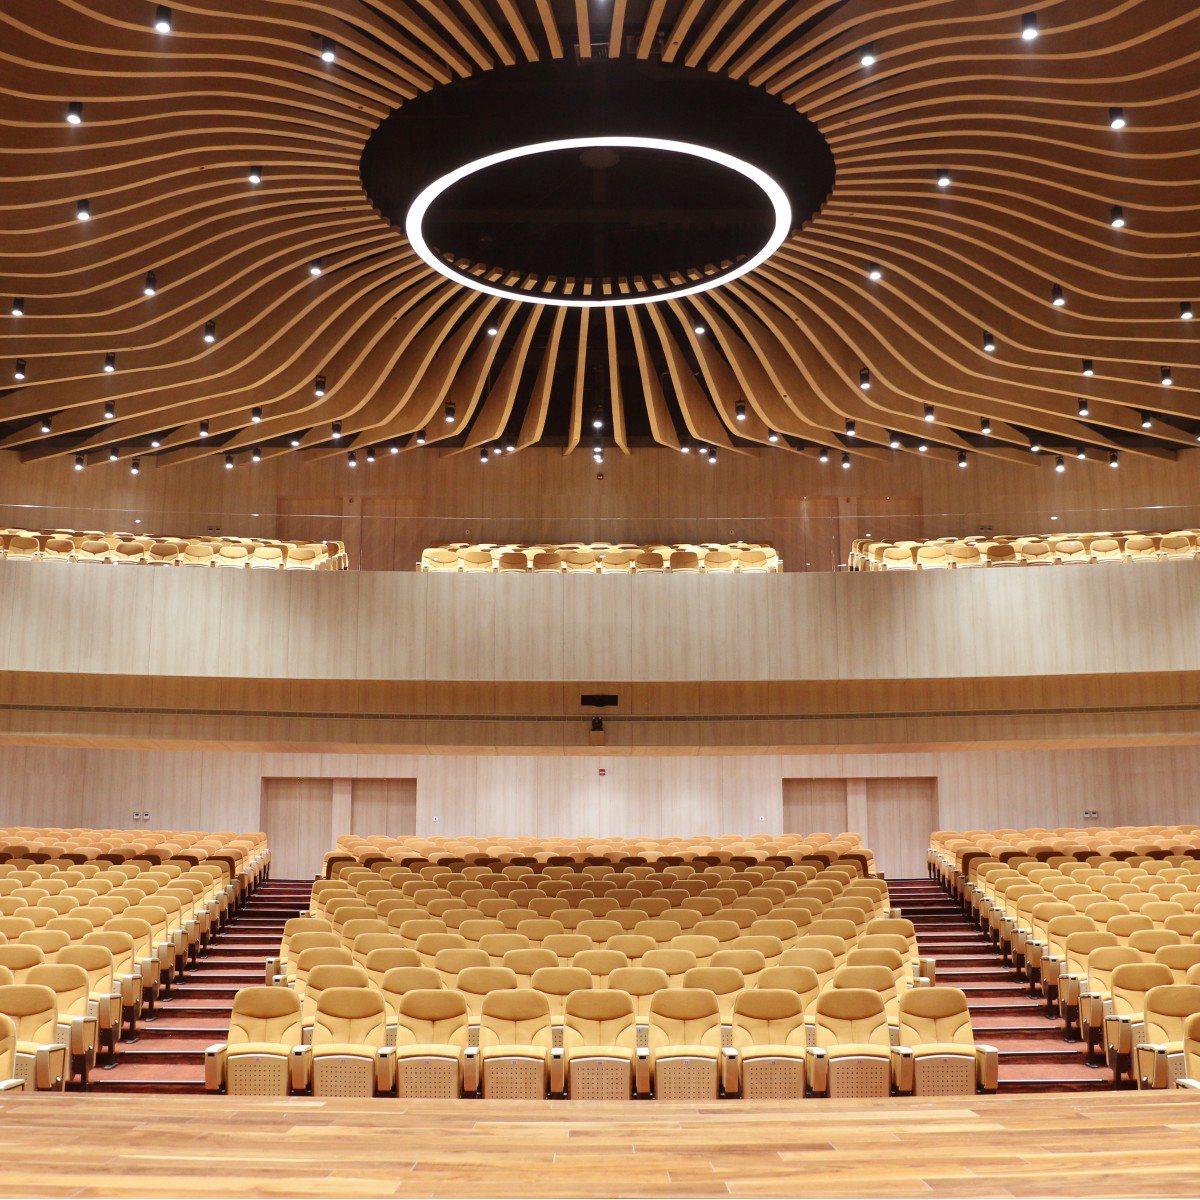 Stunning Auditorium Design by Muhammed El Sepaey